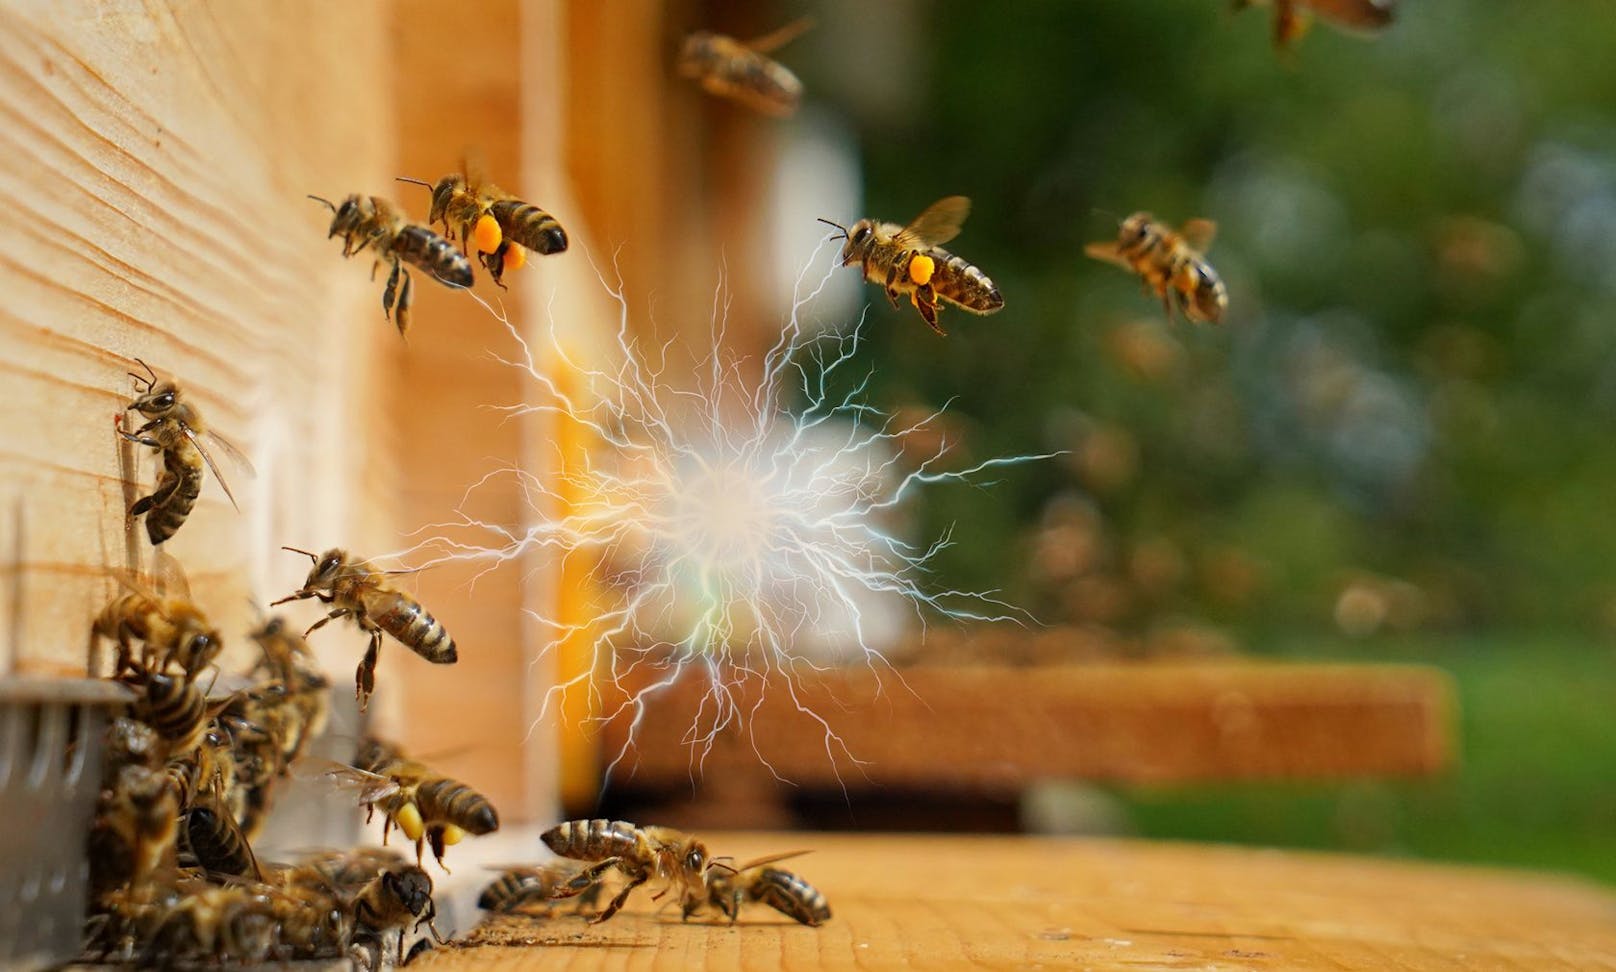 Hochspannungs-Sumsi: Bienen erzeugen elektrische Ladung